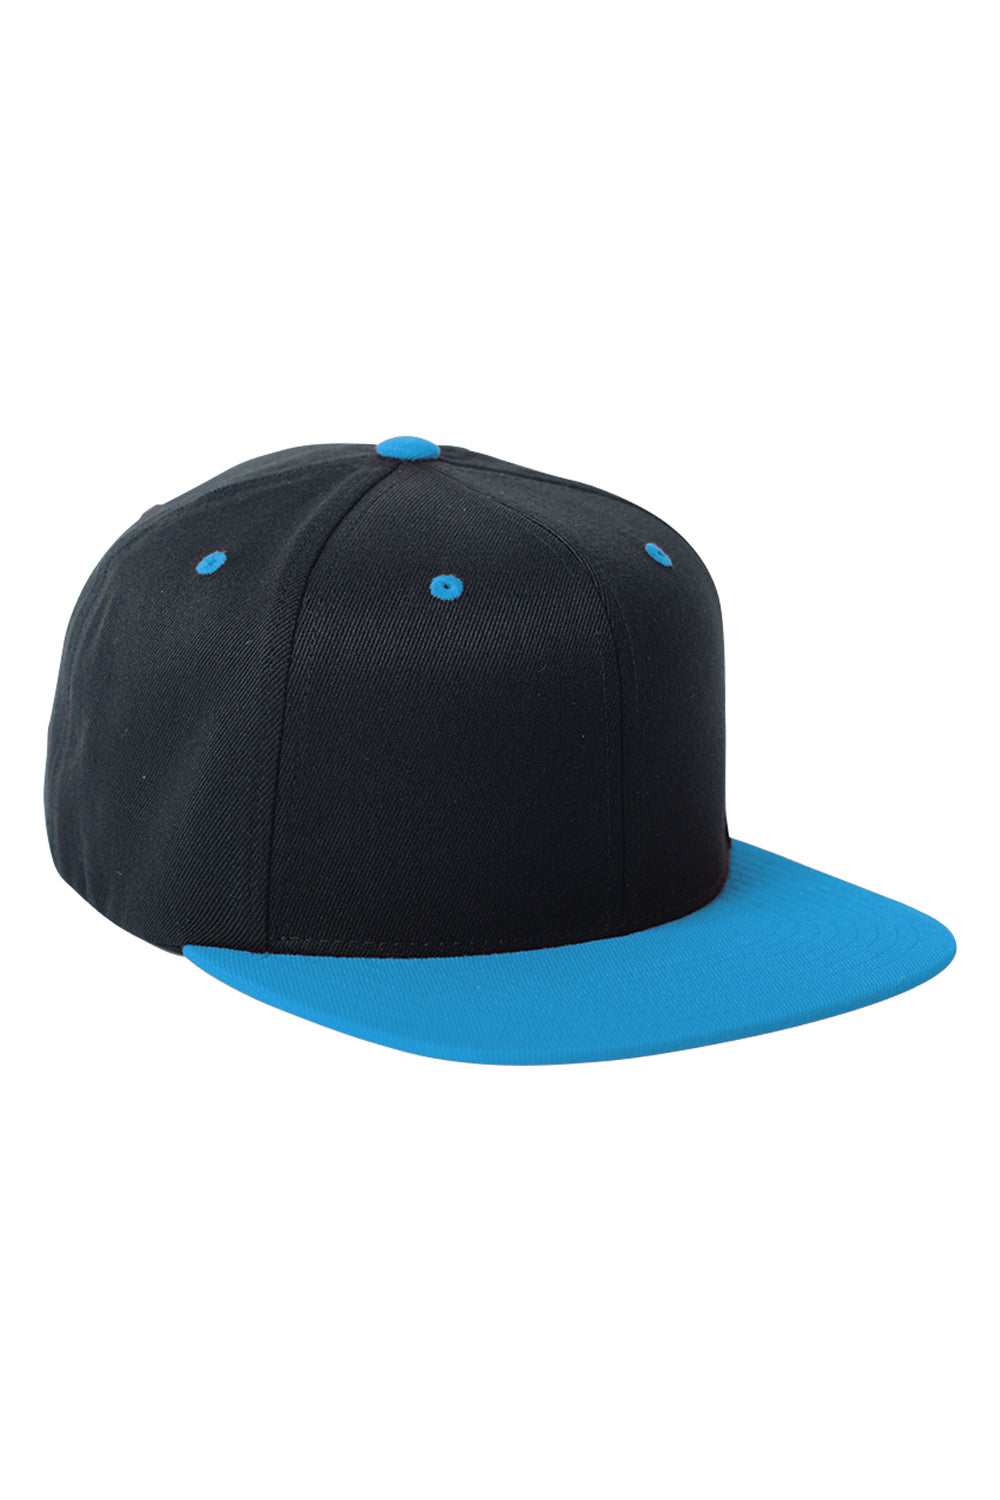 Flexfit 110FT Mens Adjustable Hat Black/Teal Green Front